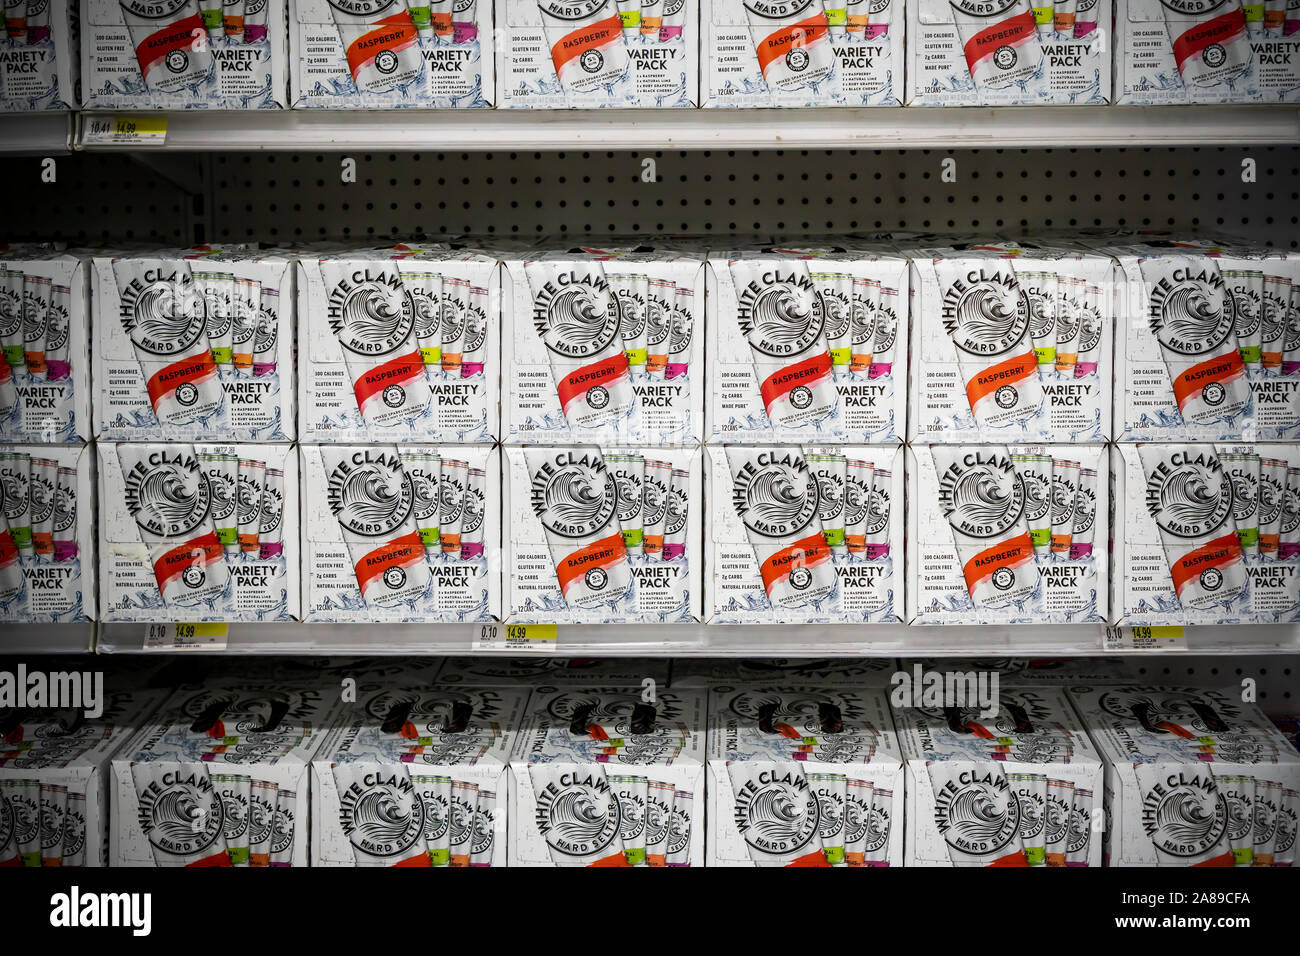 Fälle von Weiße Kralle Marke hart Seltzer in einem Supermarkt in New York am Dienstag, 5. November 2019. Große Bier Brauereien haben in den seltzer Raum erhalten sowie Mark Anthony Marken., der Inhaber des Weißen Krallen. (© Richard B. Levine) Stockfoto